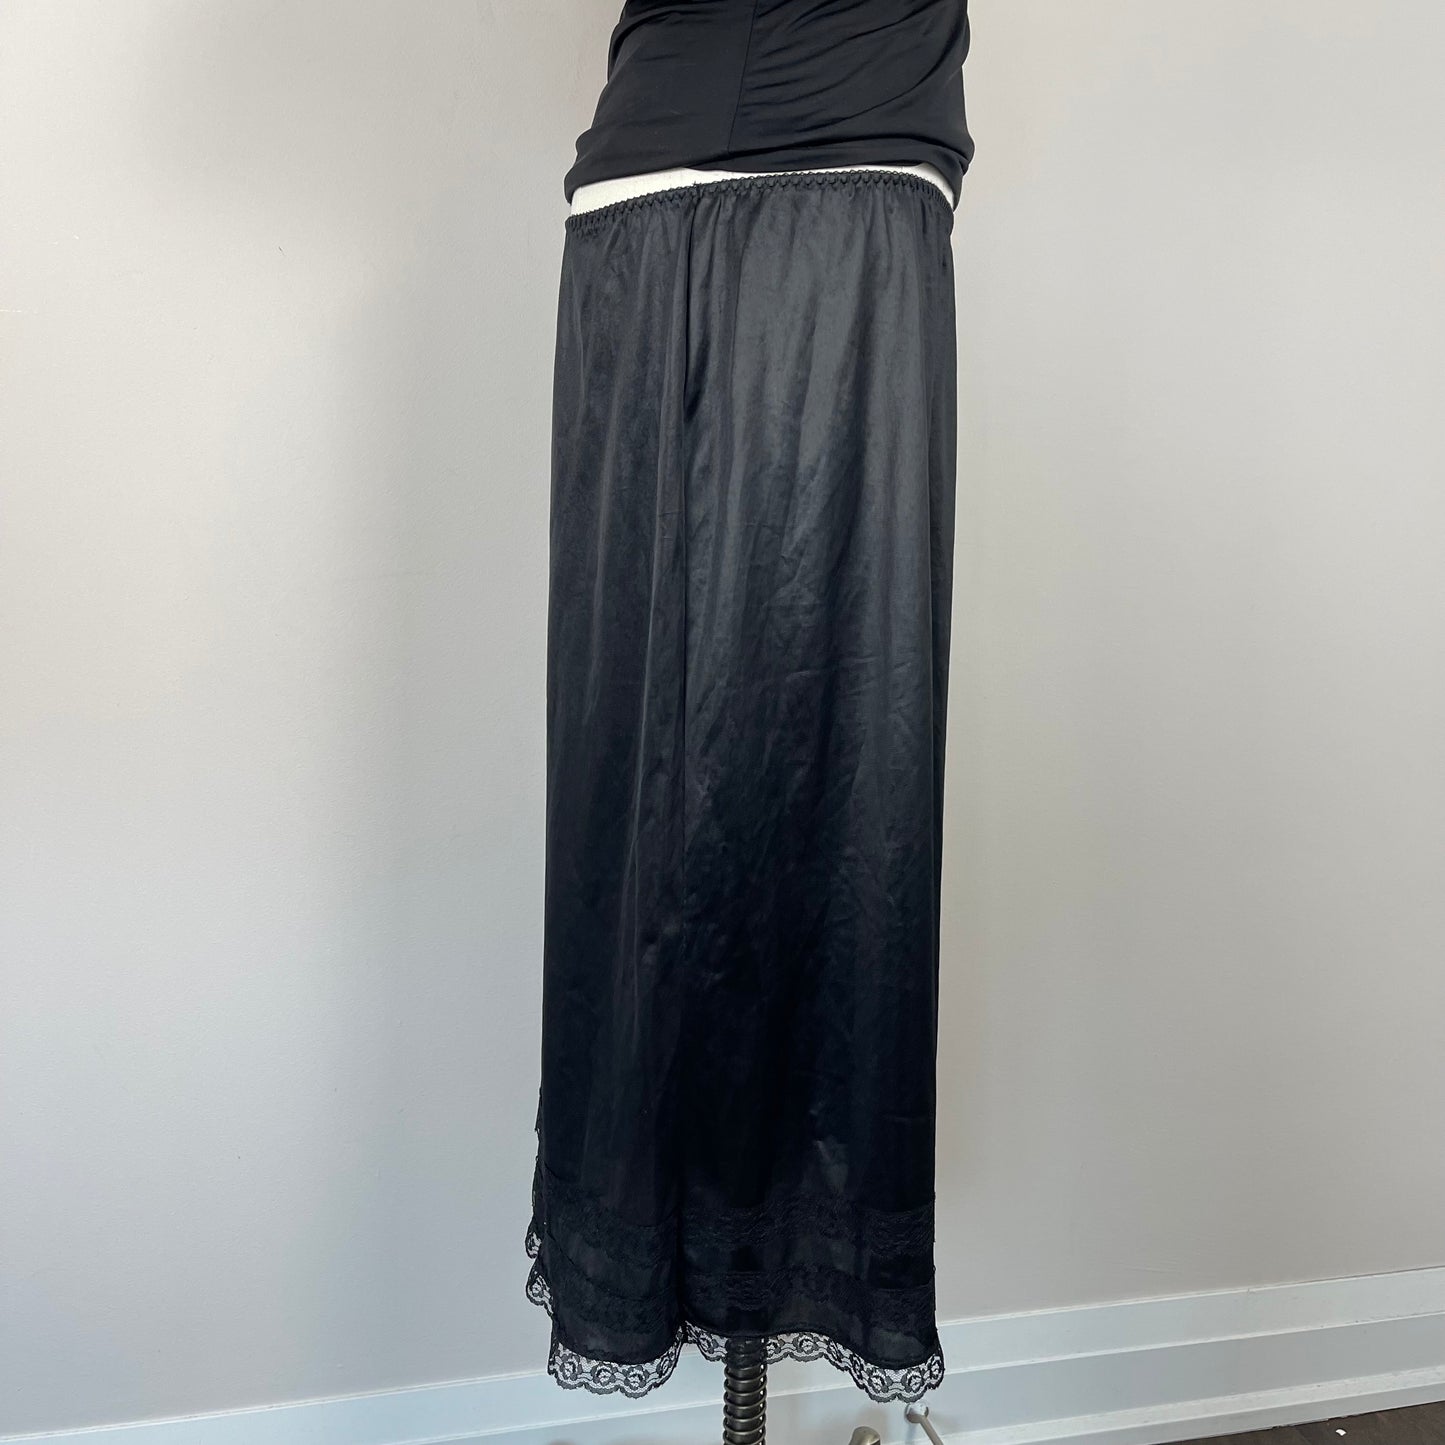 Vintage Black Satin Slip Skirt